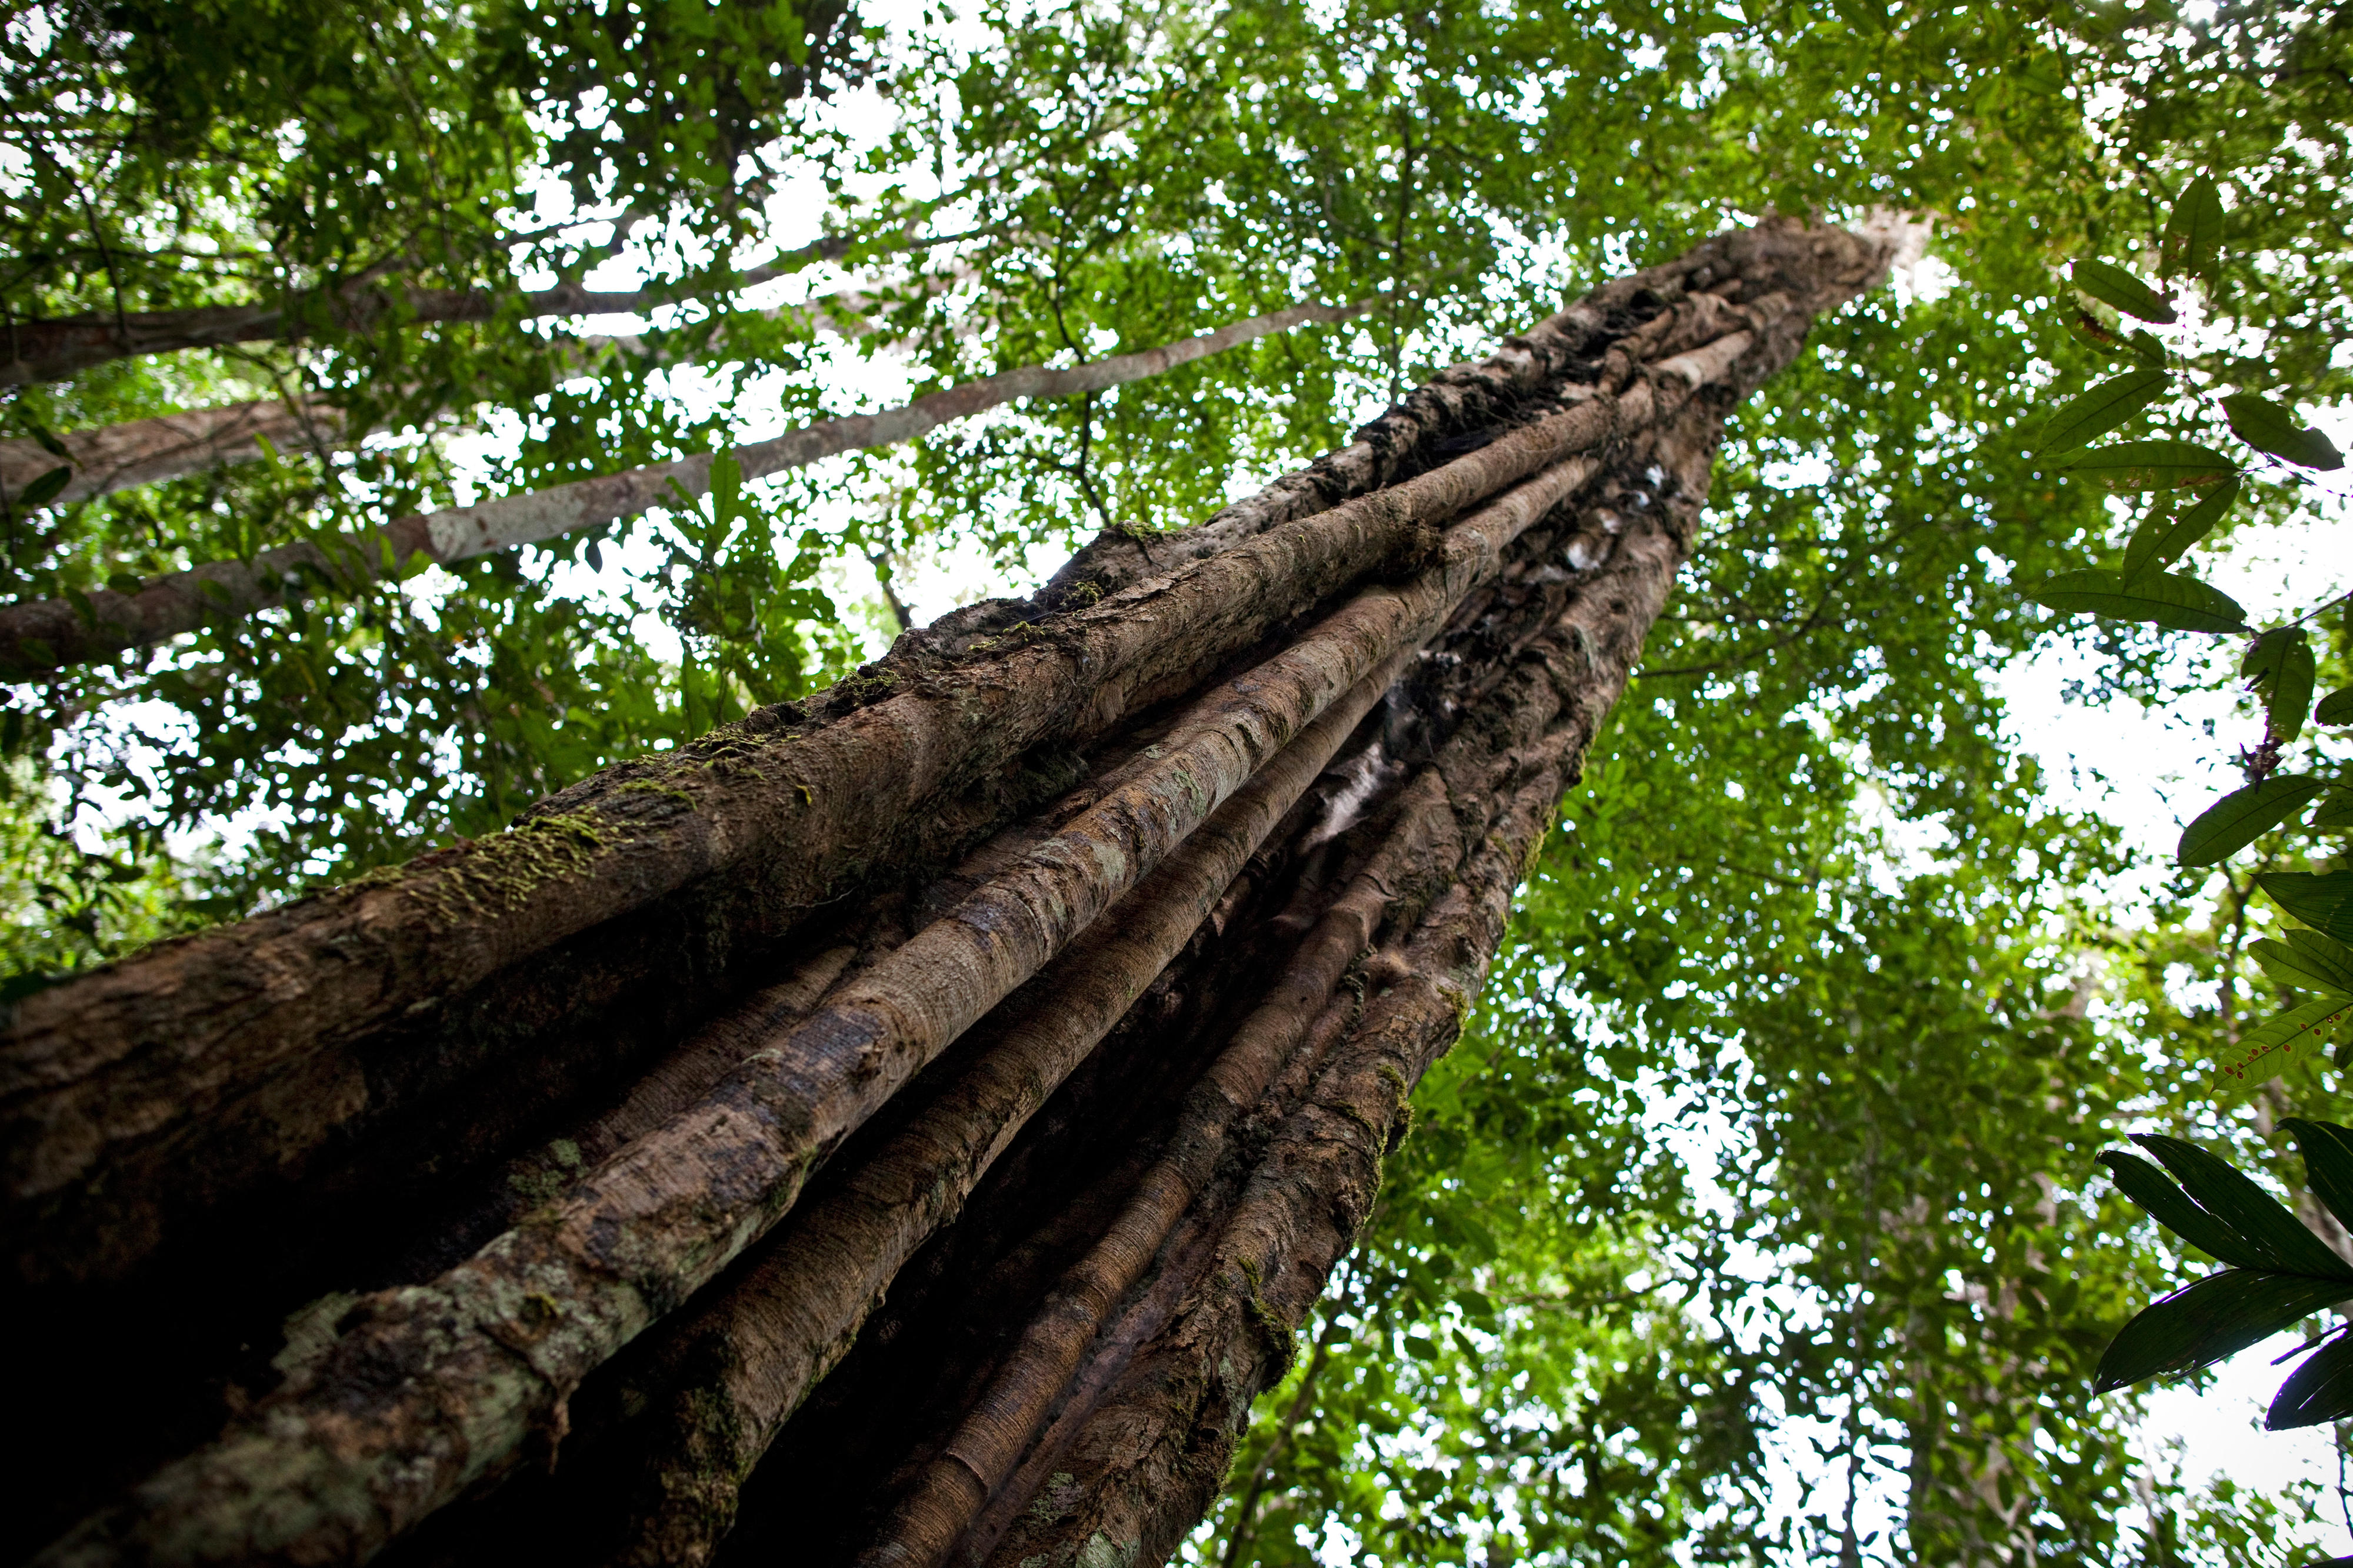 Rainforest in Brazil